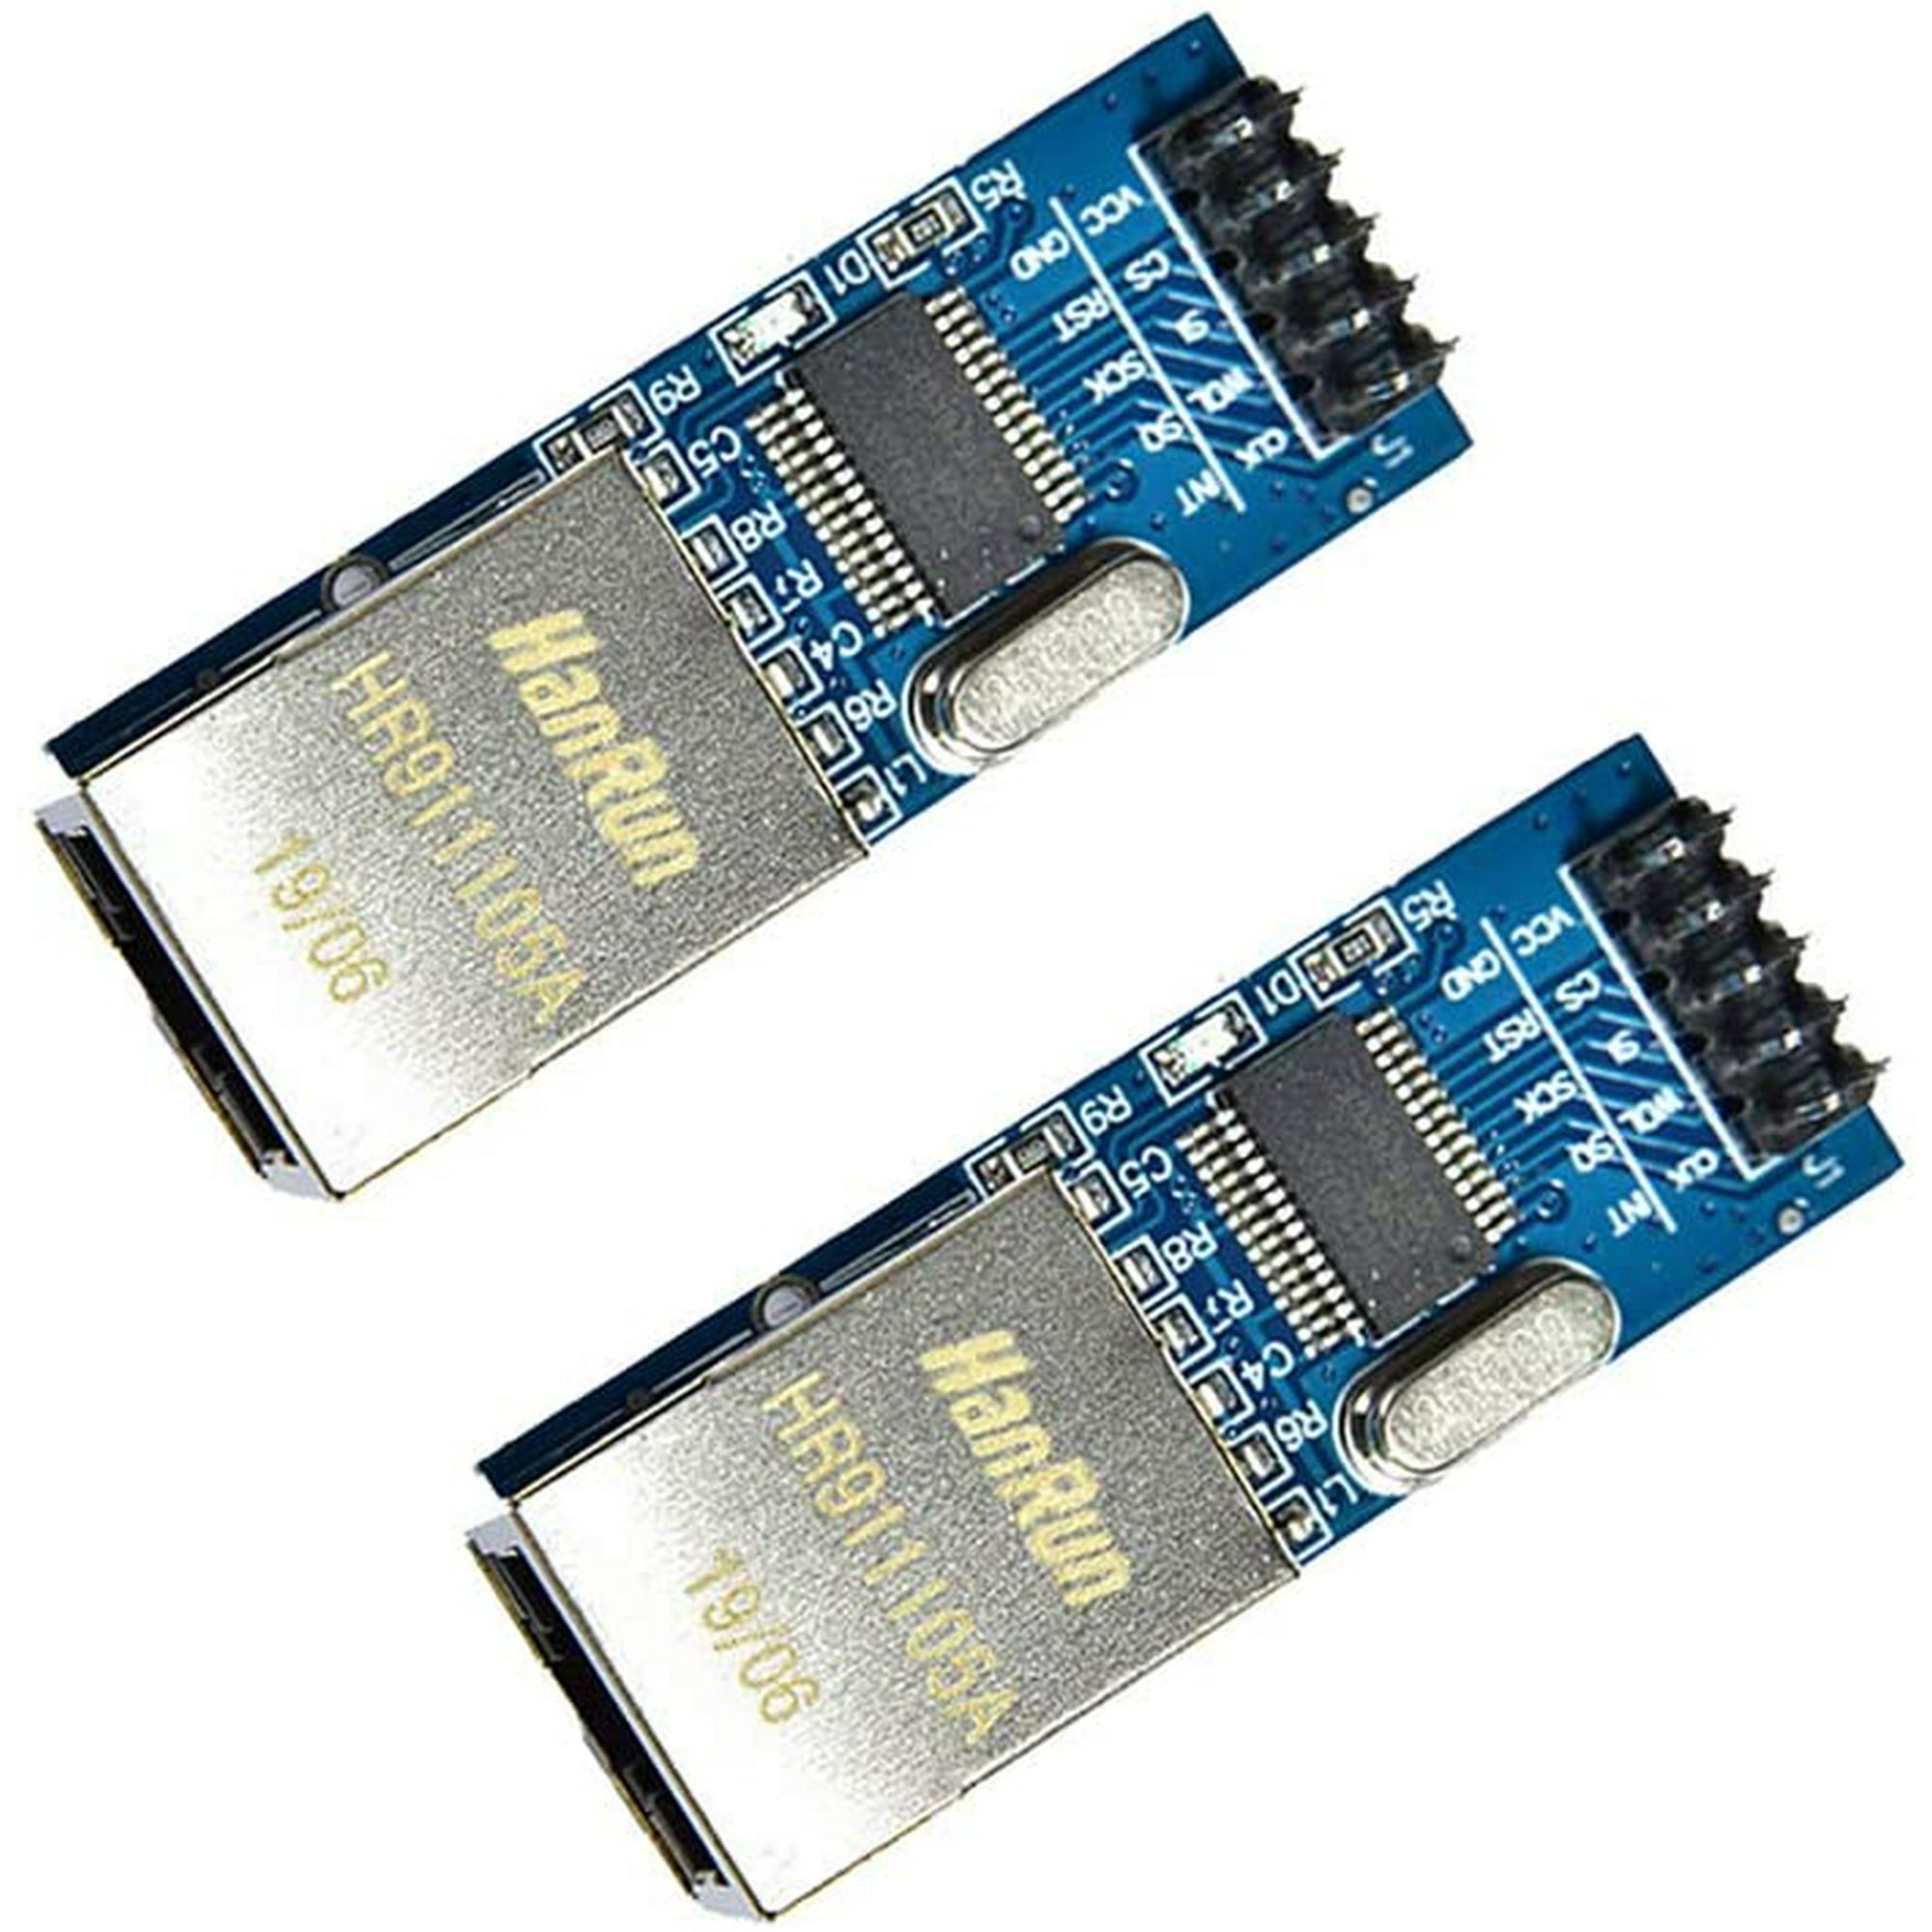 Mini ENC28J60 3.3V Ethernet LAN Network Module For Arduino SPI AVR PIC LPC STM32